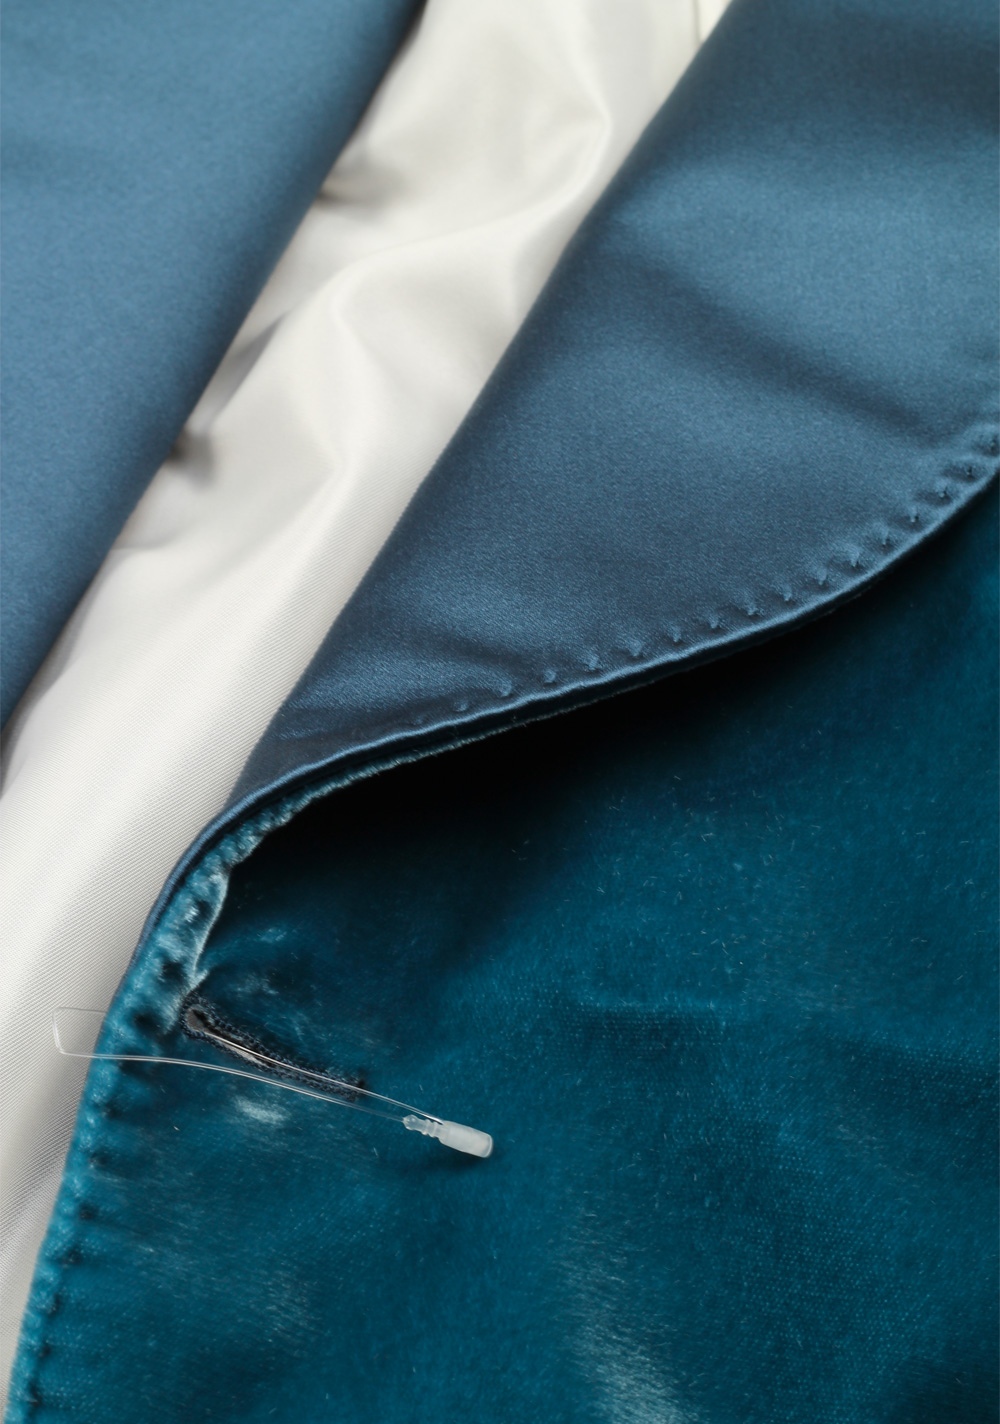 TOM FORD Shelton Shawl Collar Velvet Teal Sport Coat Tuxedo Dinner Jacket | Costume Limité